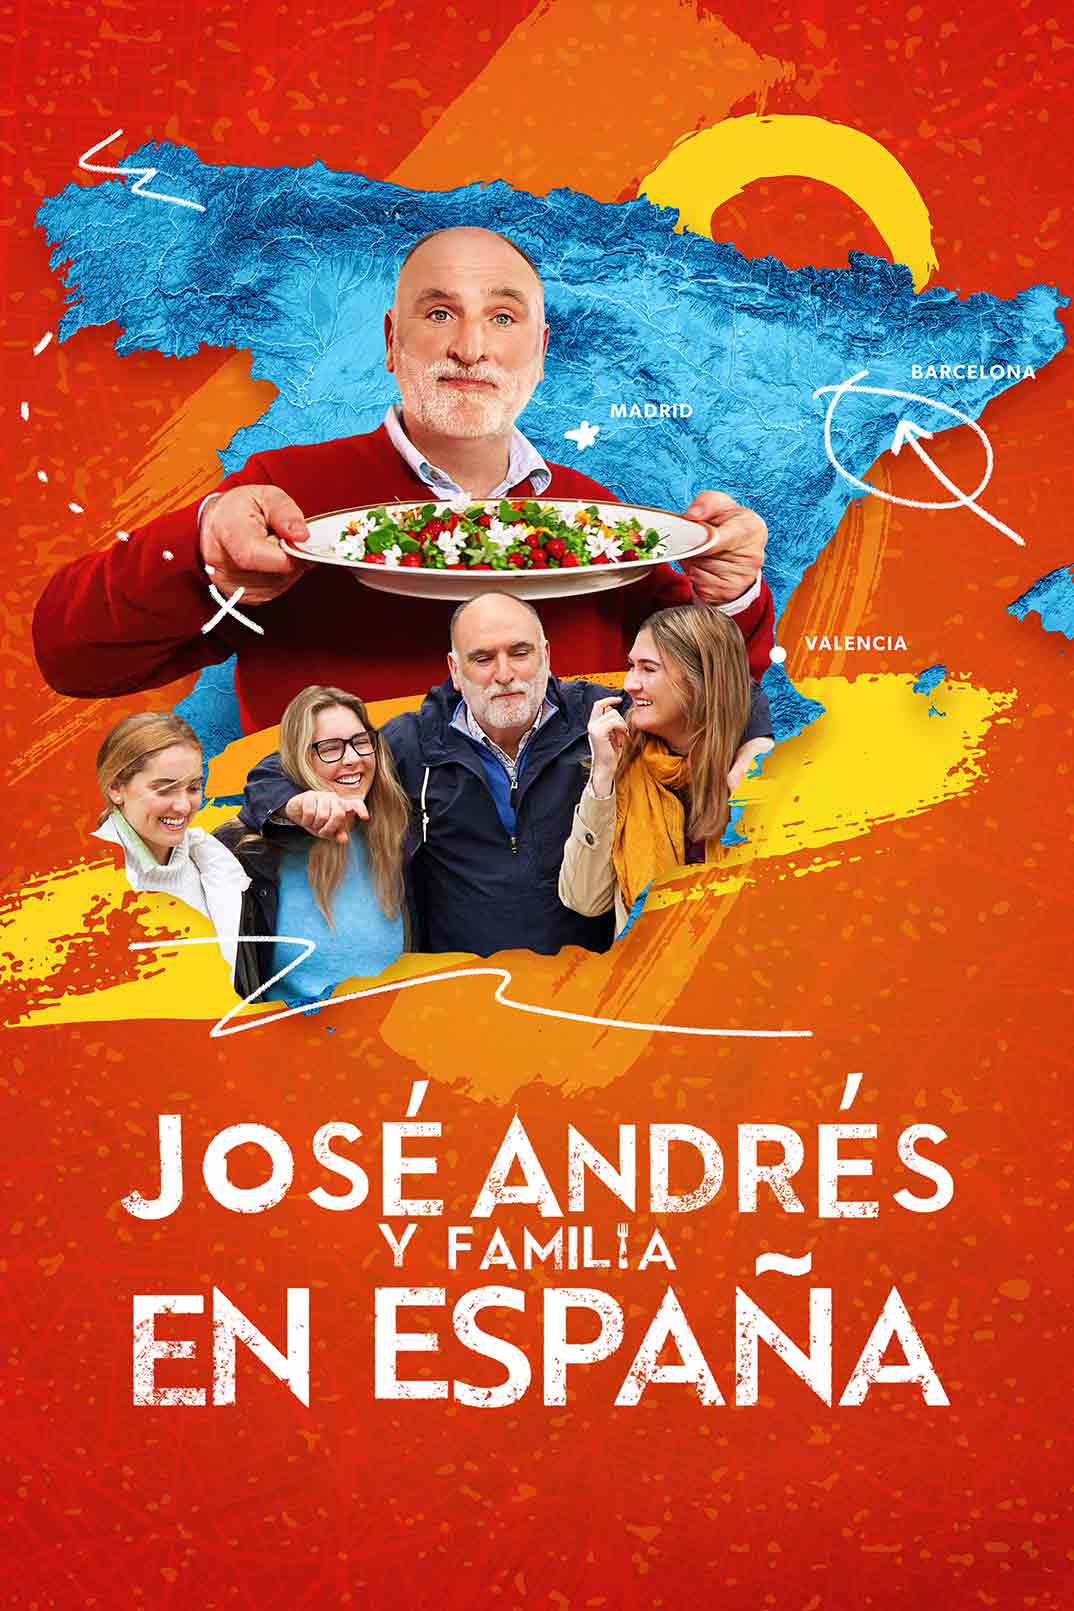 José Andrés y familia en España © HBO Max